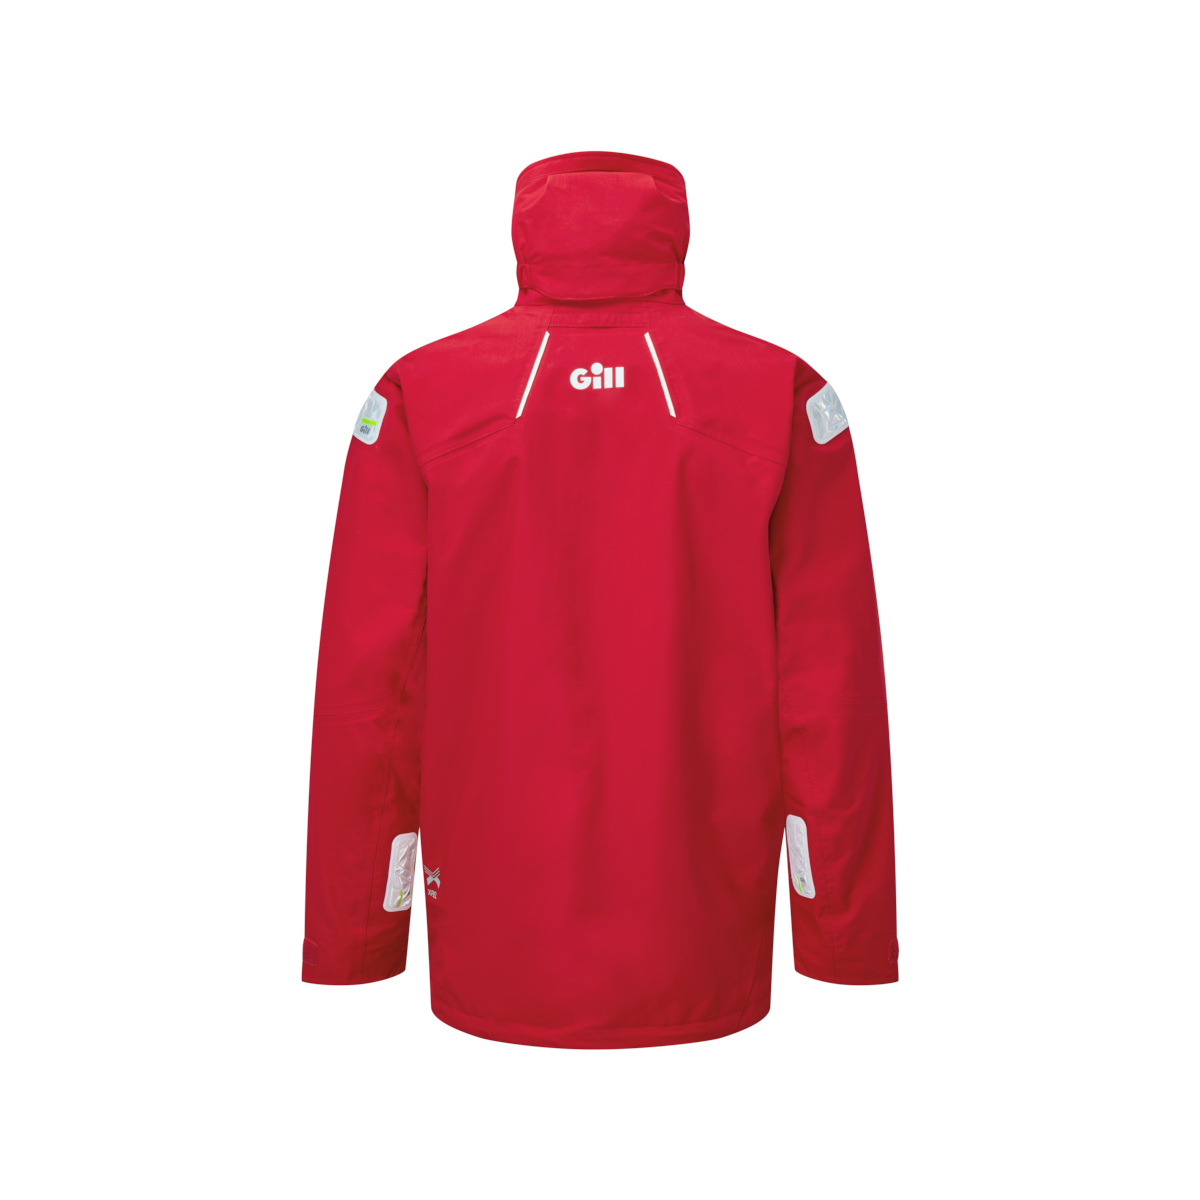 Gill OS25 veste de voile offshore homme rouge, taille XXXL